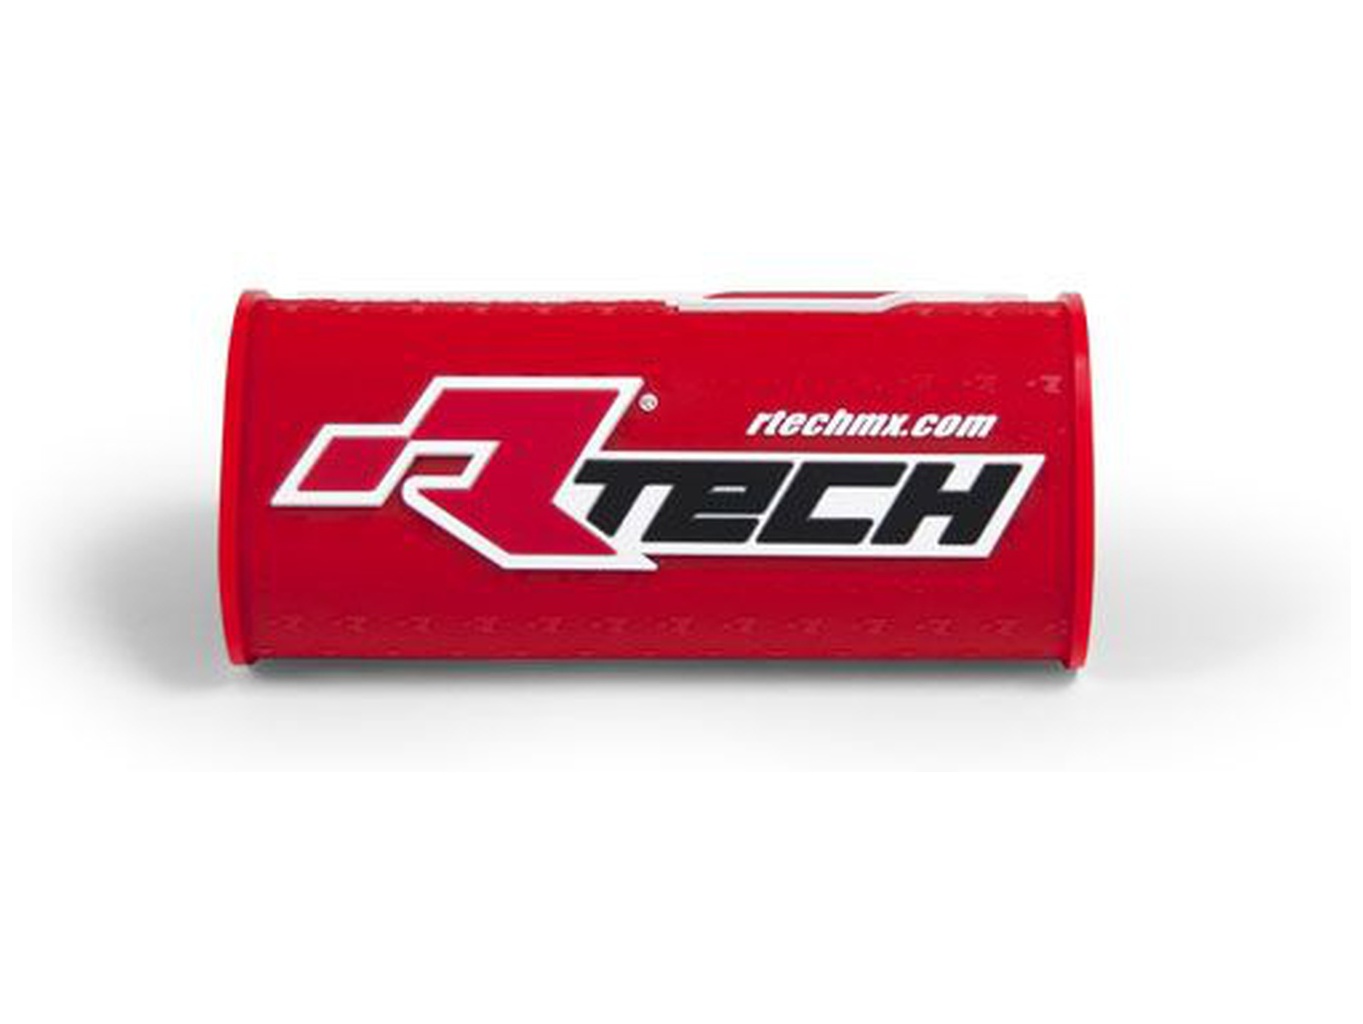 Obrázek produktu chránič na bezhrazdová řídítka s nápisem "Rtech" (pro průměr 28,6 mm), RTECH (červený) R-PCMNBRF0018